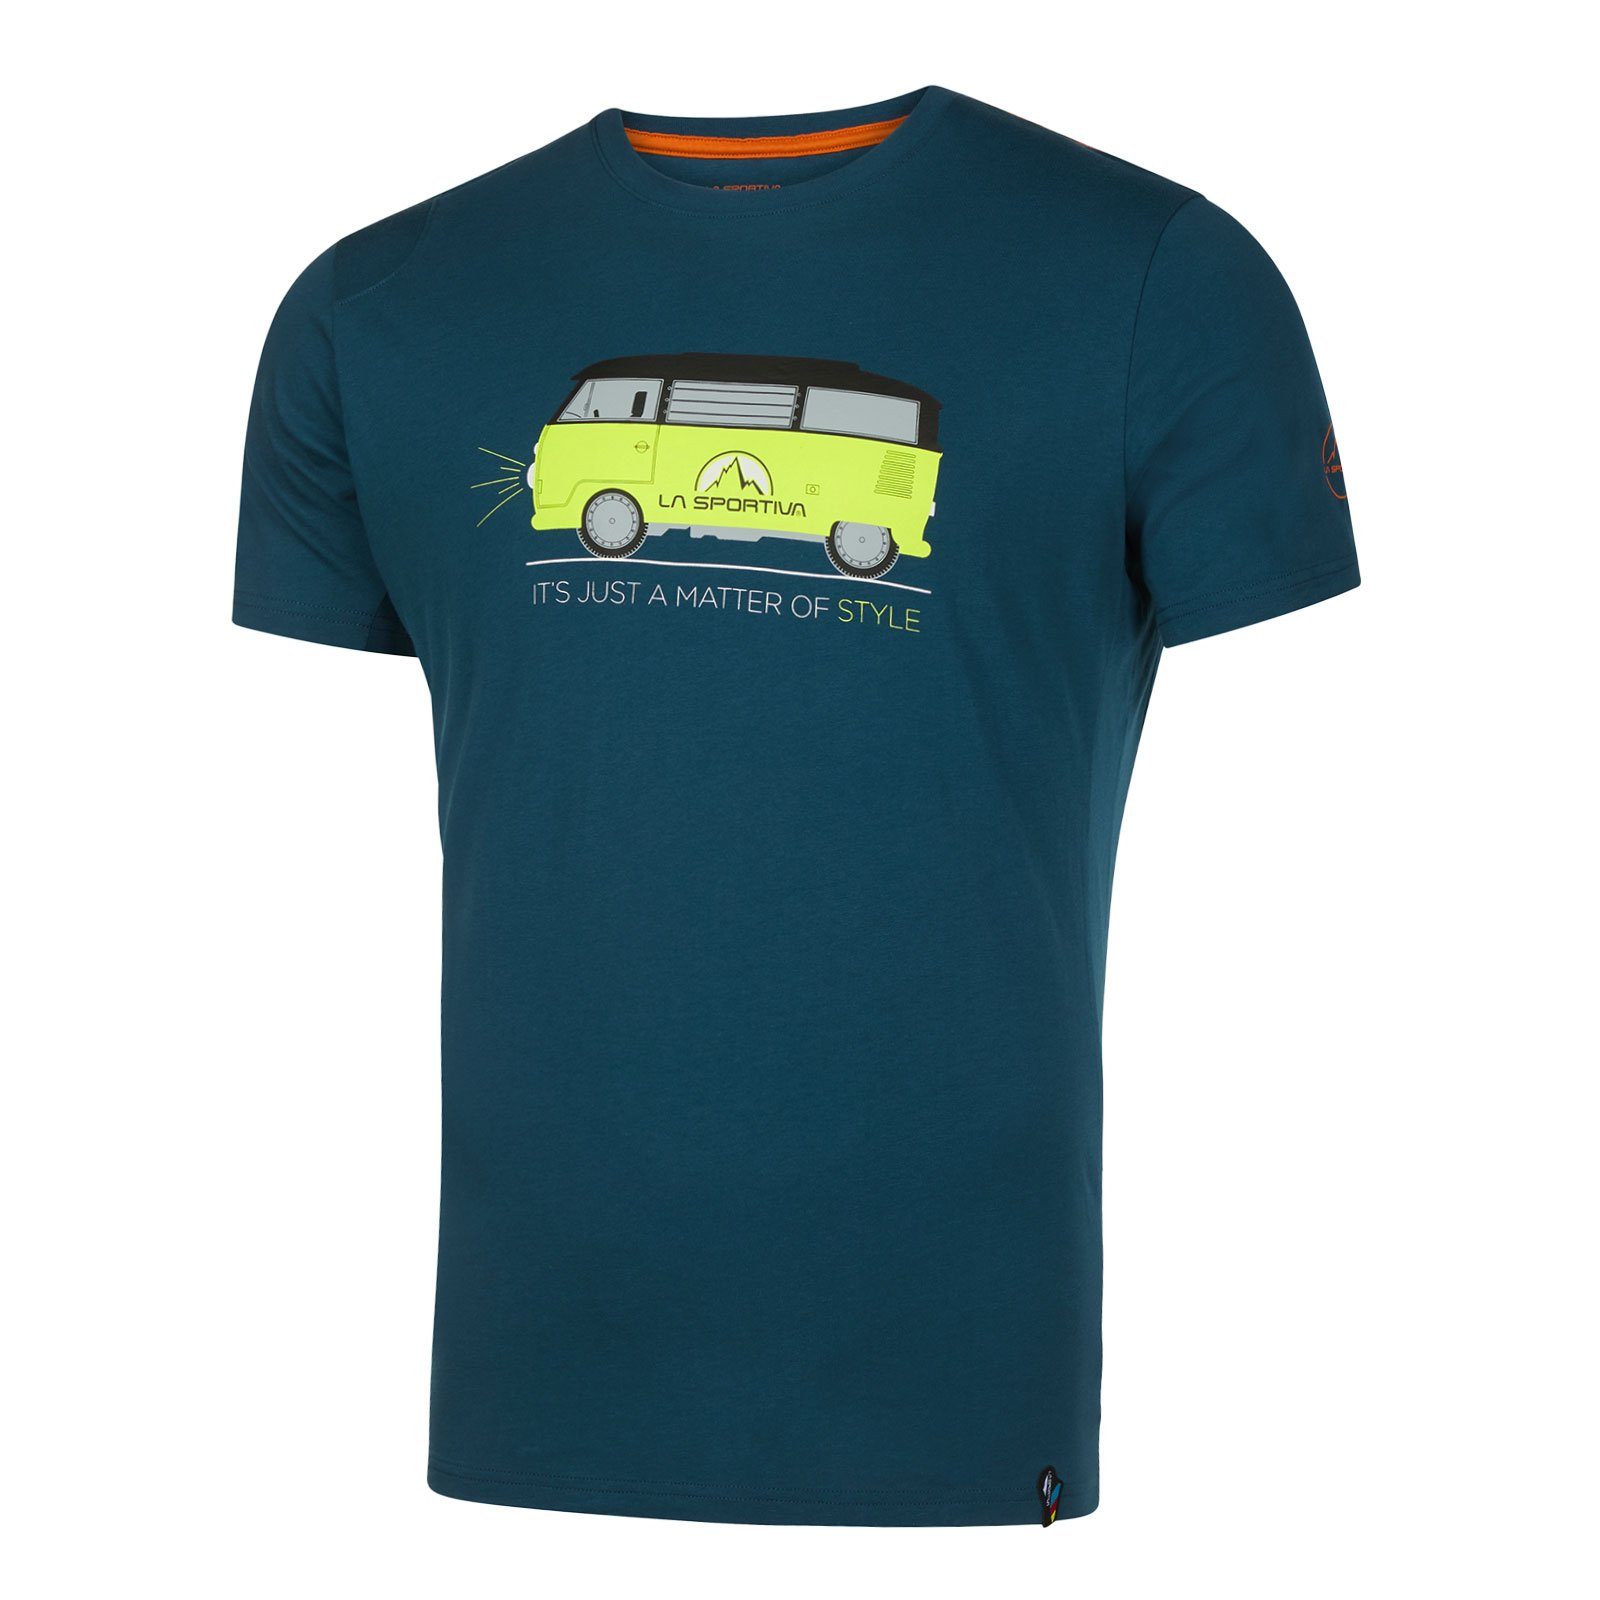 La Sportiva T-Shirt Van M aus 100% organischer Baumwolle 639639 storm blue